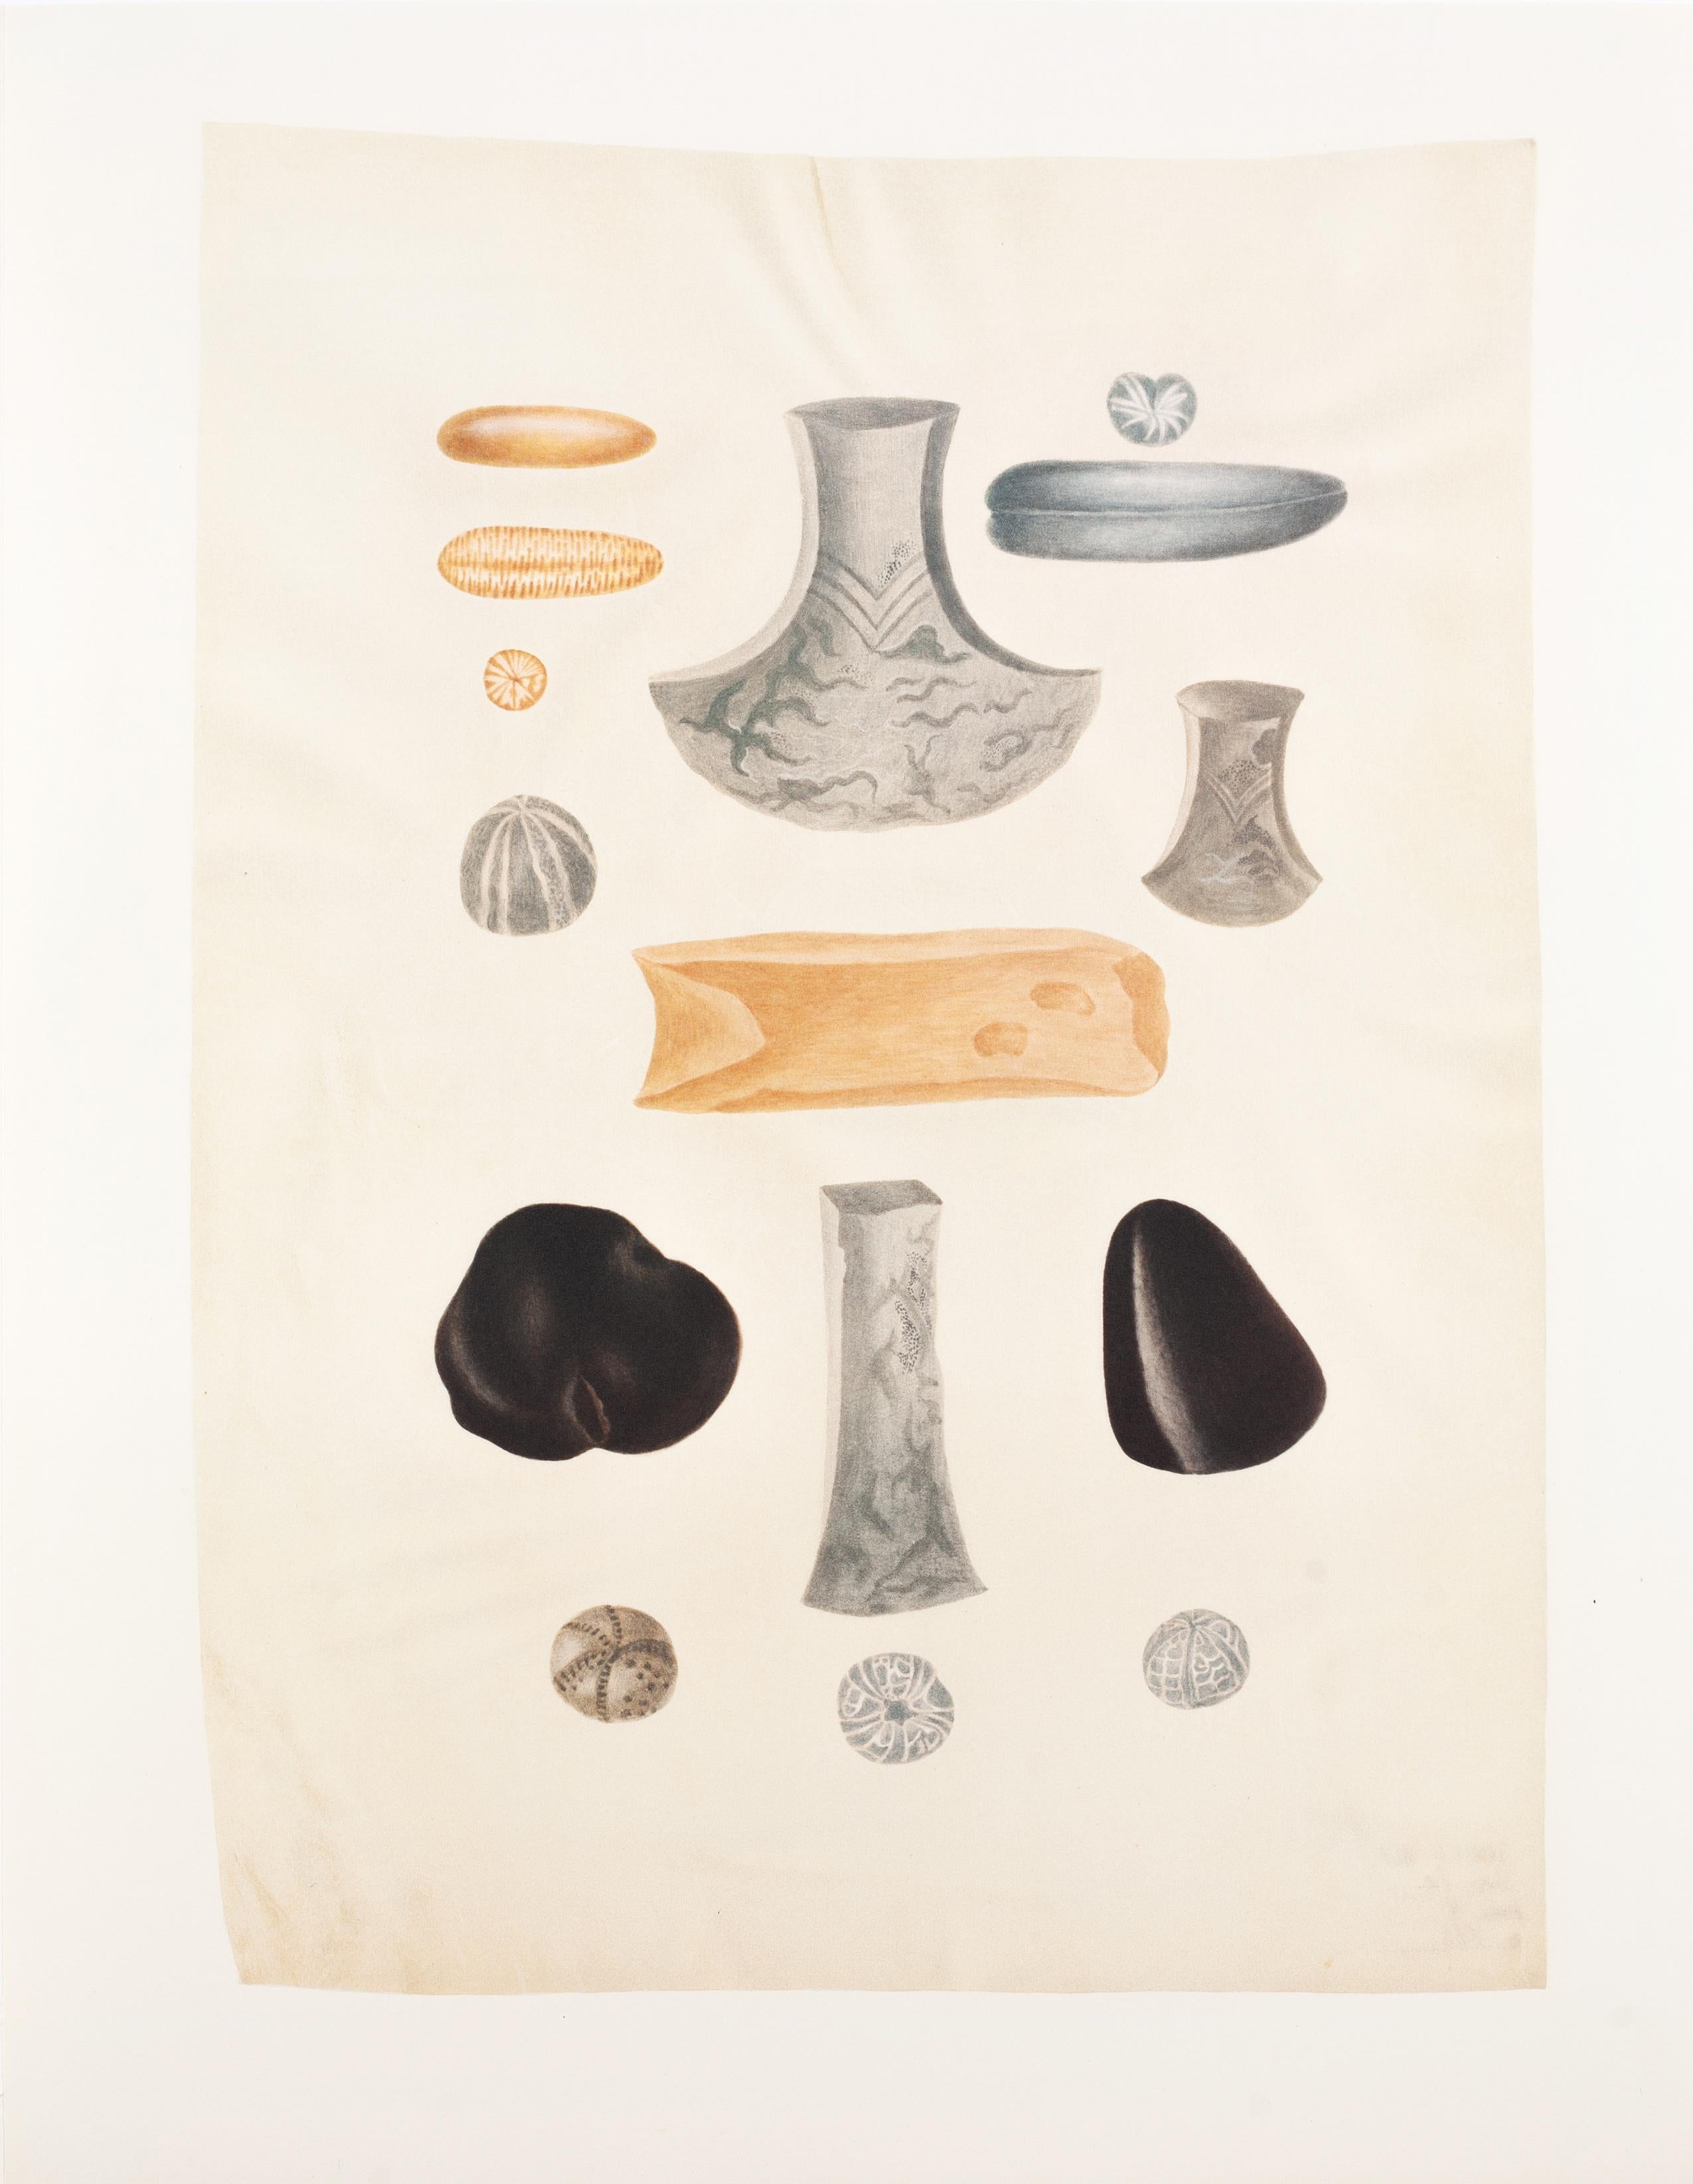 21. Fingersteine, Fossilienblemnit, Achsen aus Nephrit, Flitter und Metall, versteinert – Print von Maria Sybilla Merian